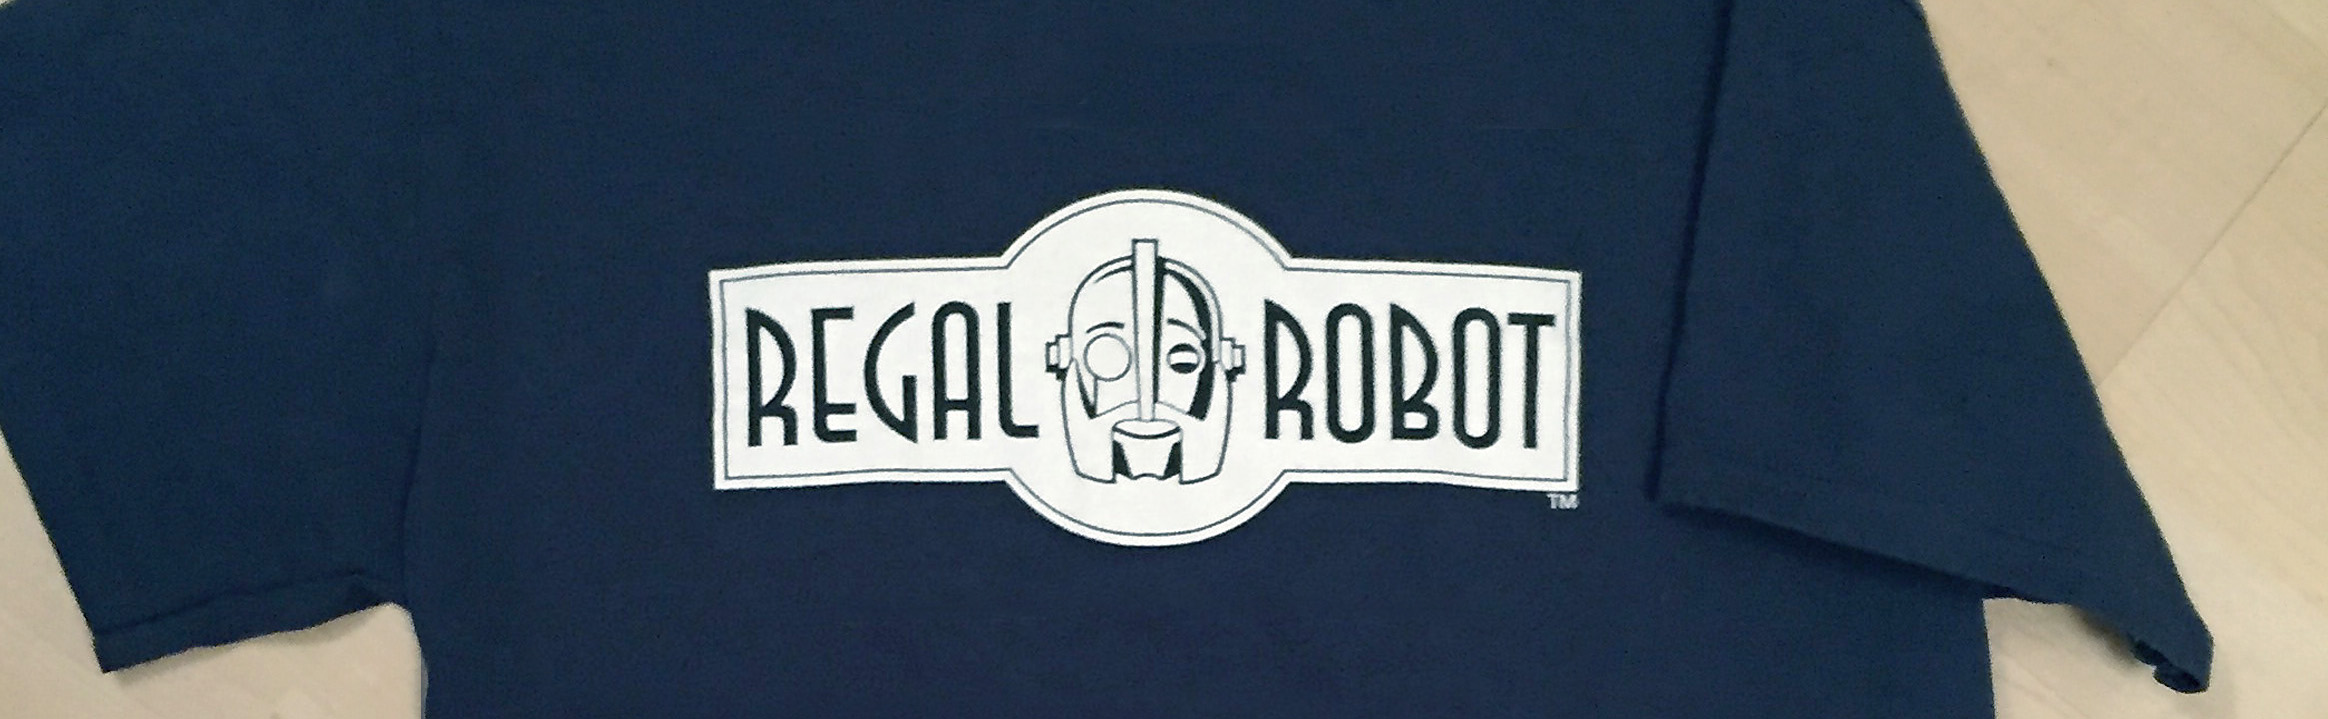 regal-robot-furniture-art-tee-shirt-banner1